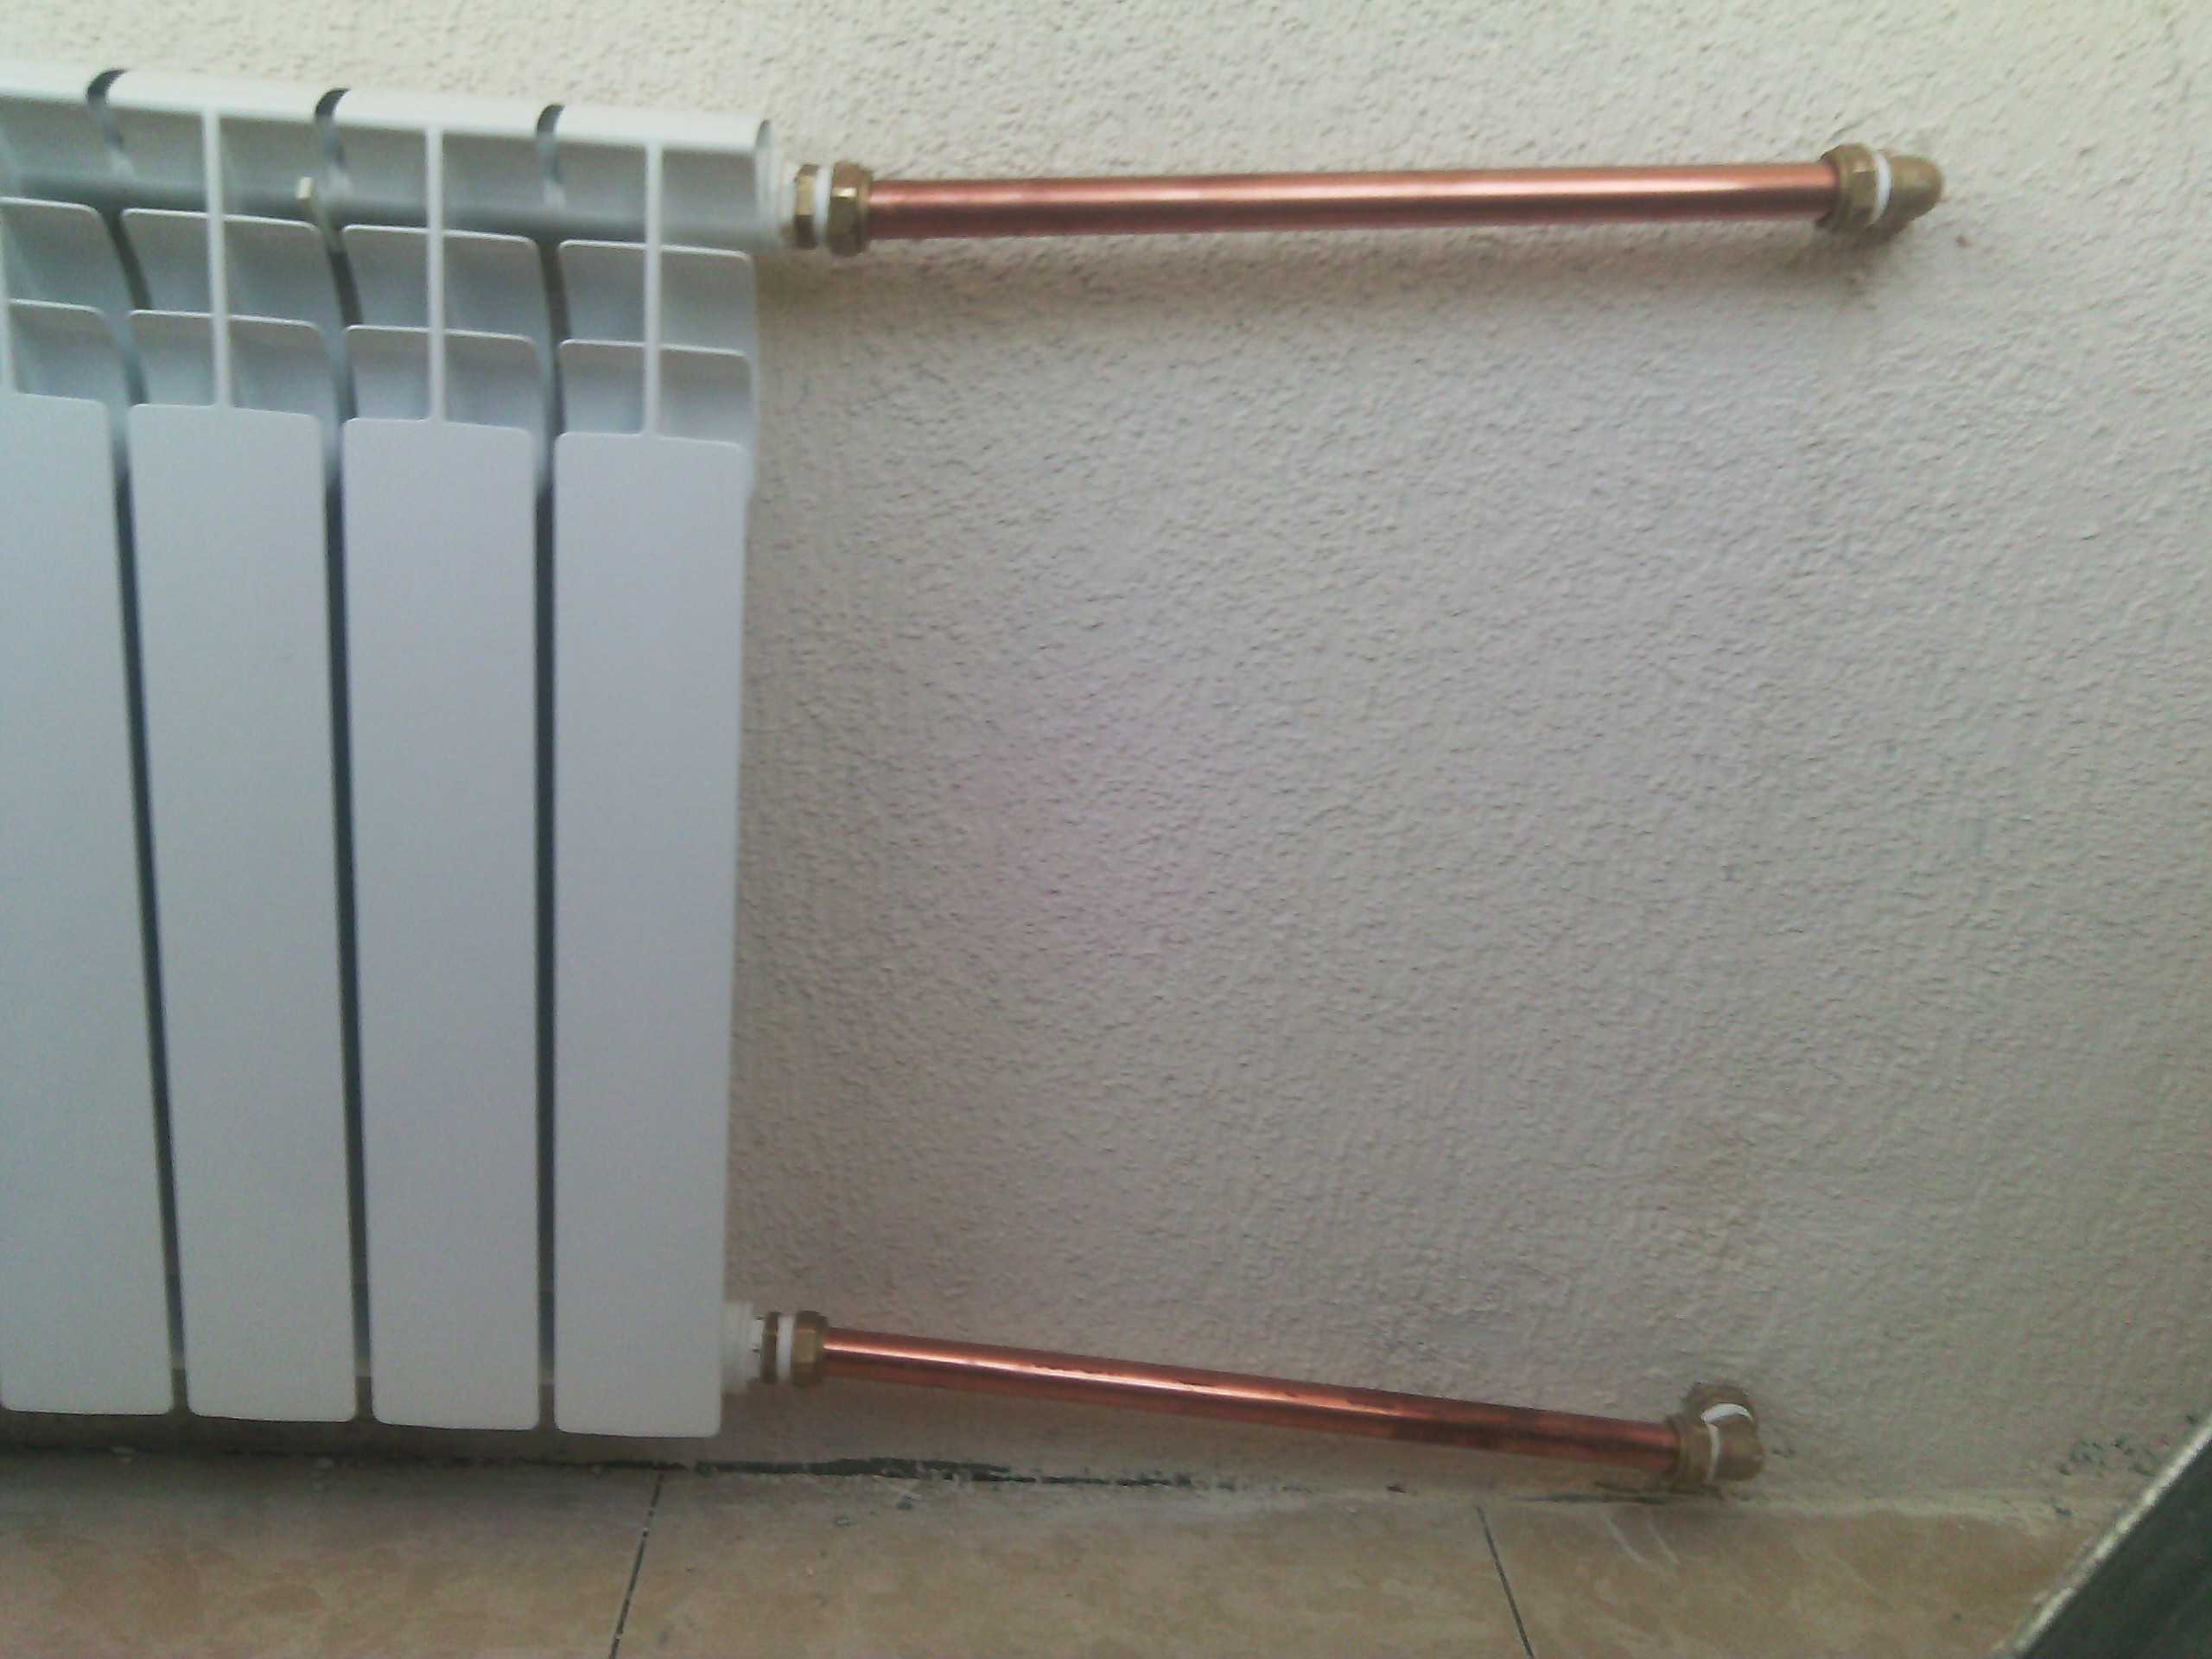 Радиатор отопления сверху горячий, а снизу холодный – как исправить ситуацию? почему радиатор сверху горячий, а снизу холодный: решаем проблему